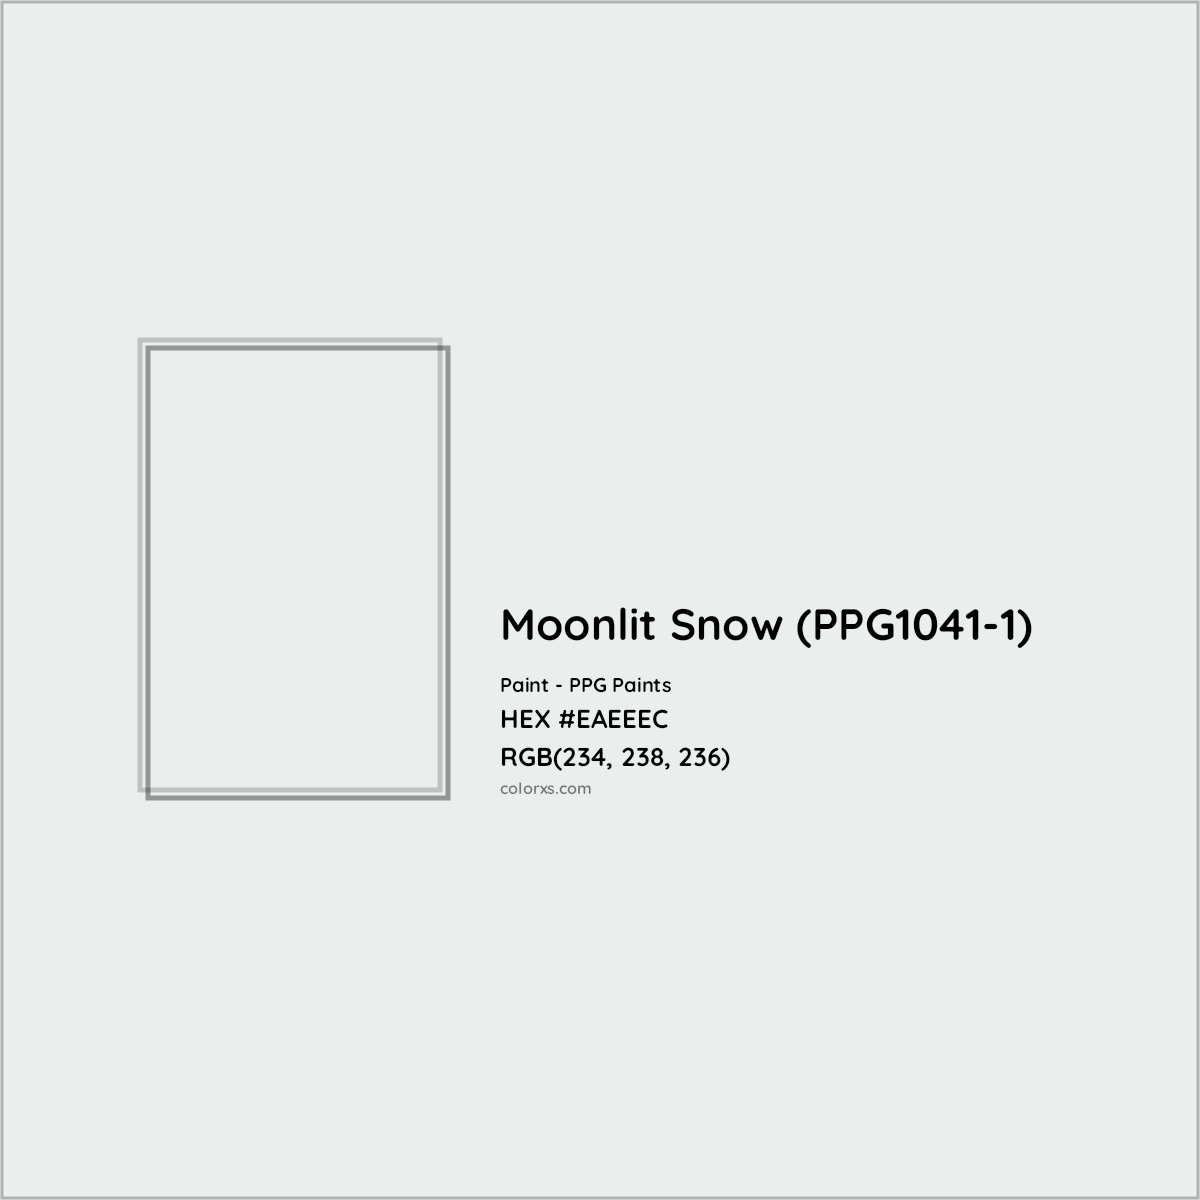 HEX #EAEEEC Moonlit Snow (PPG1041-1) Paint PPG Paints - Color Code